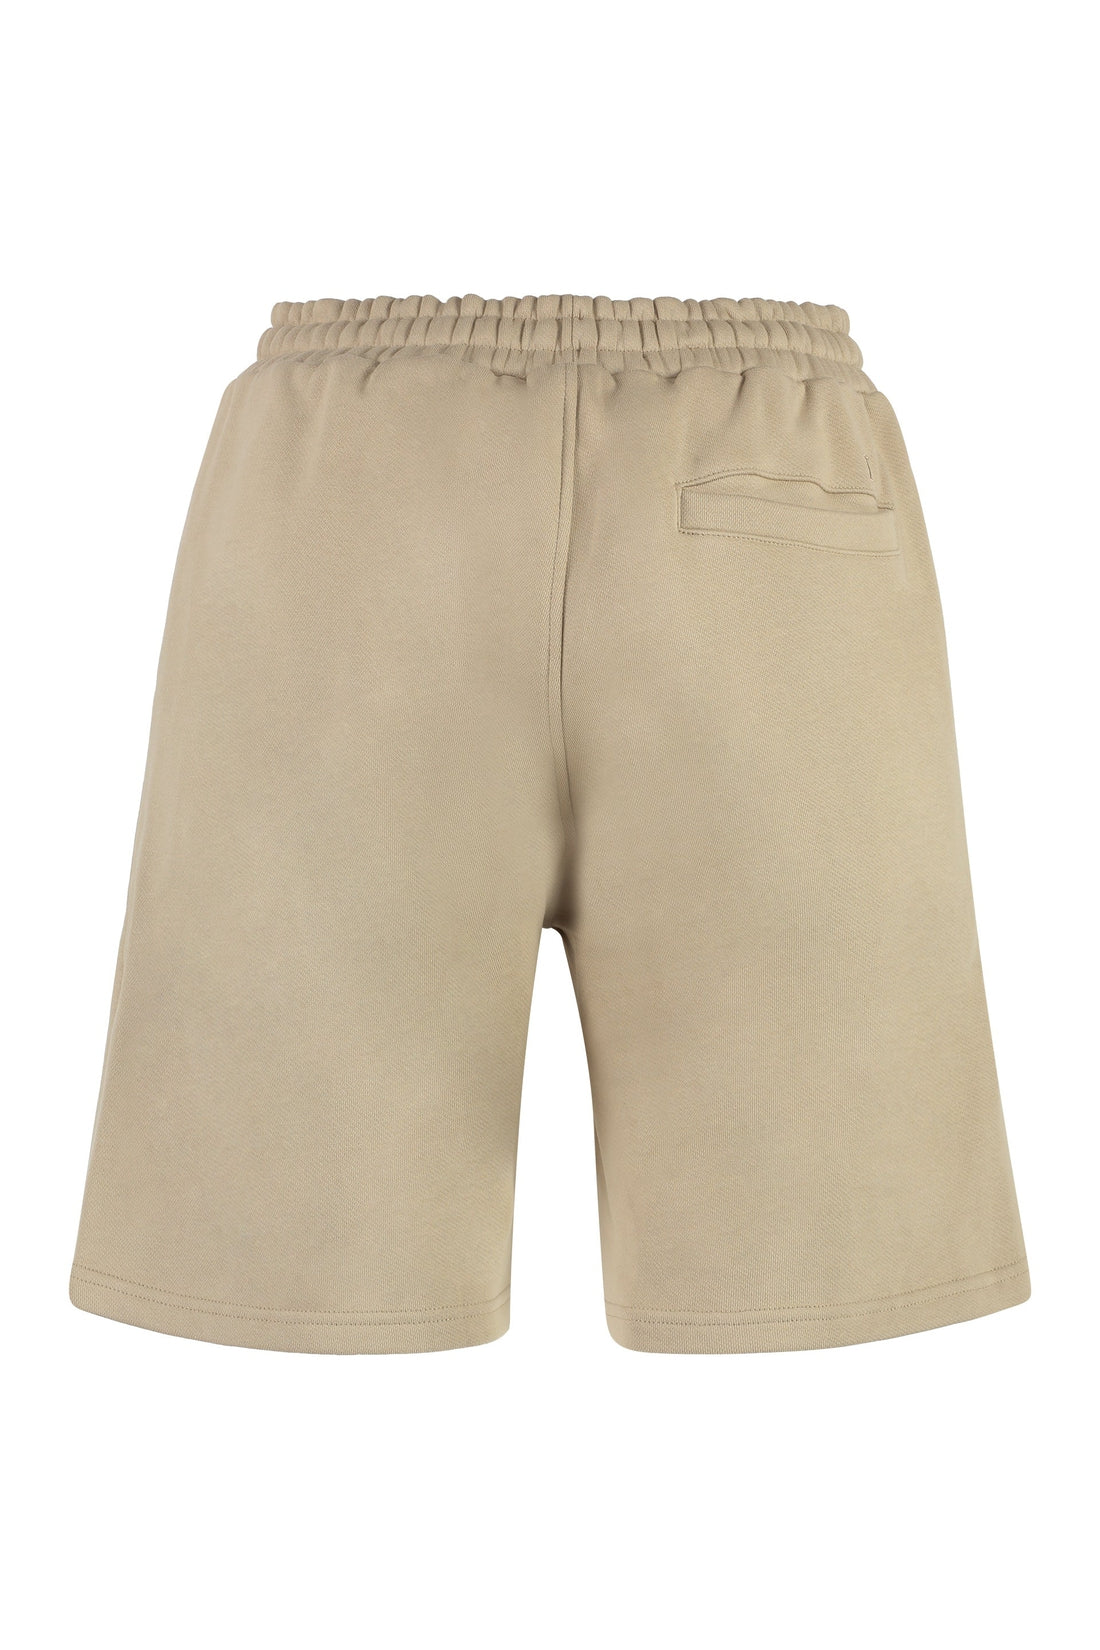 Les Deux-OUTLET-SALE-Diego fleece shorts-ARCHIVIST